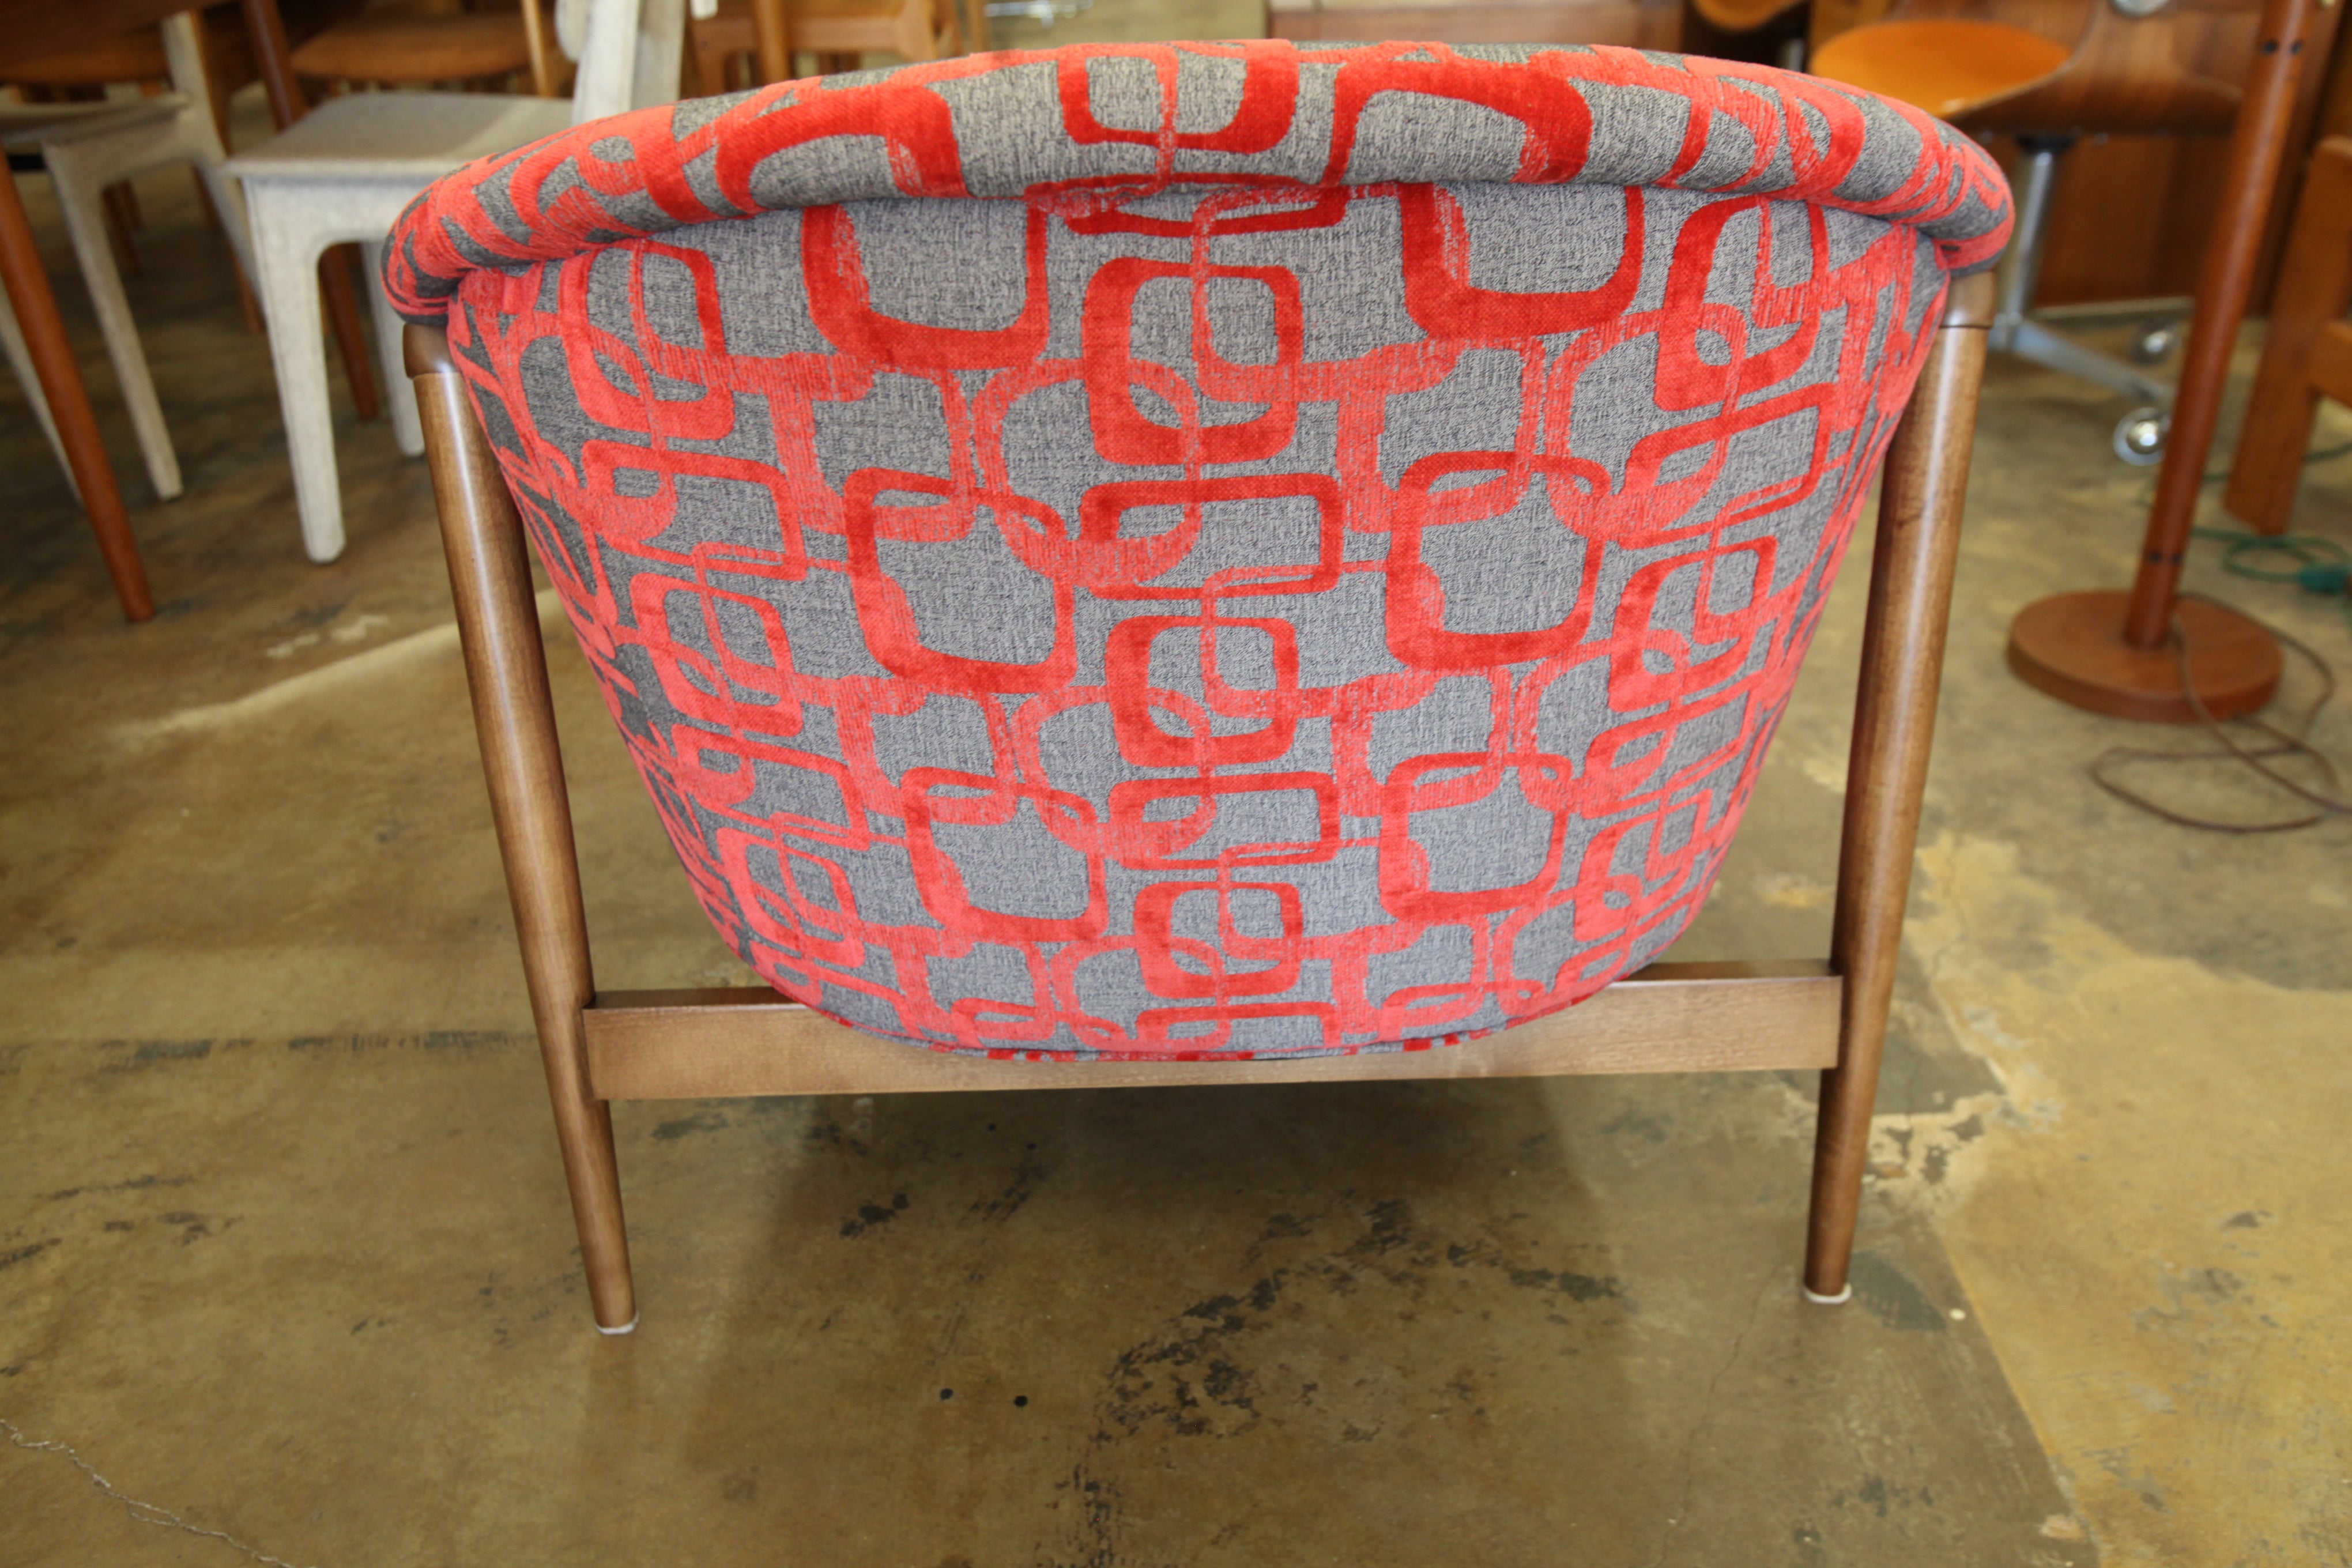 Vintage Walnut Framed Lounge Chair w/ Newer Fabric (34.5"W x 32"H x 36"D)